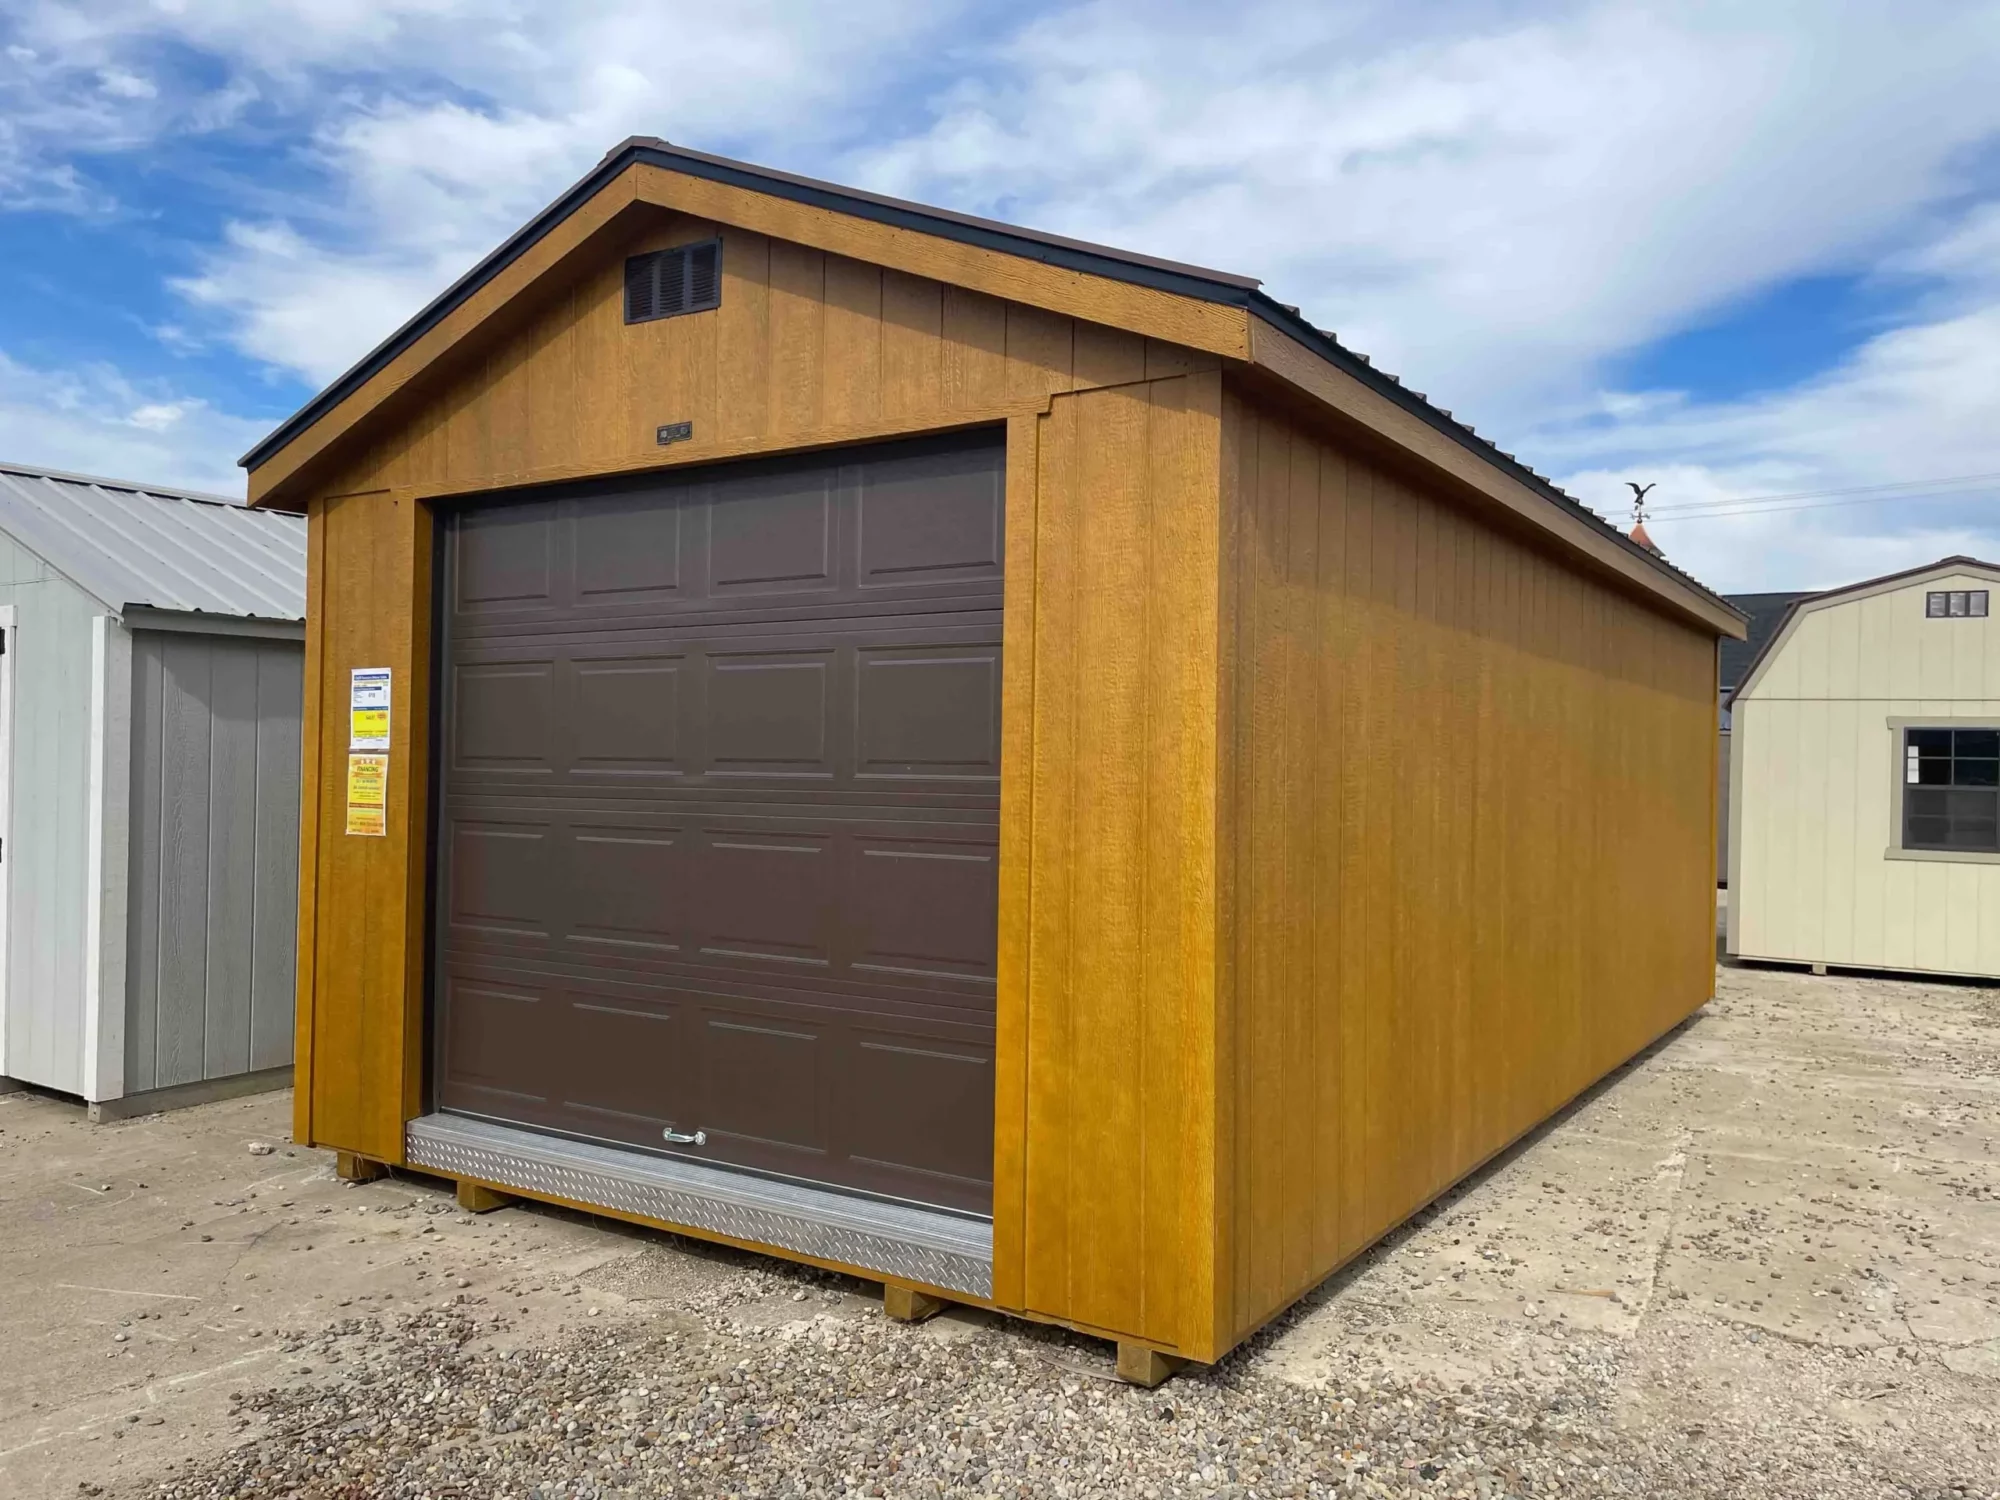 12x24 shed with garage door toledo ohio